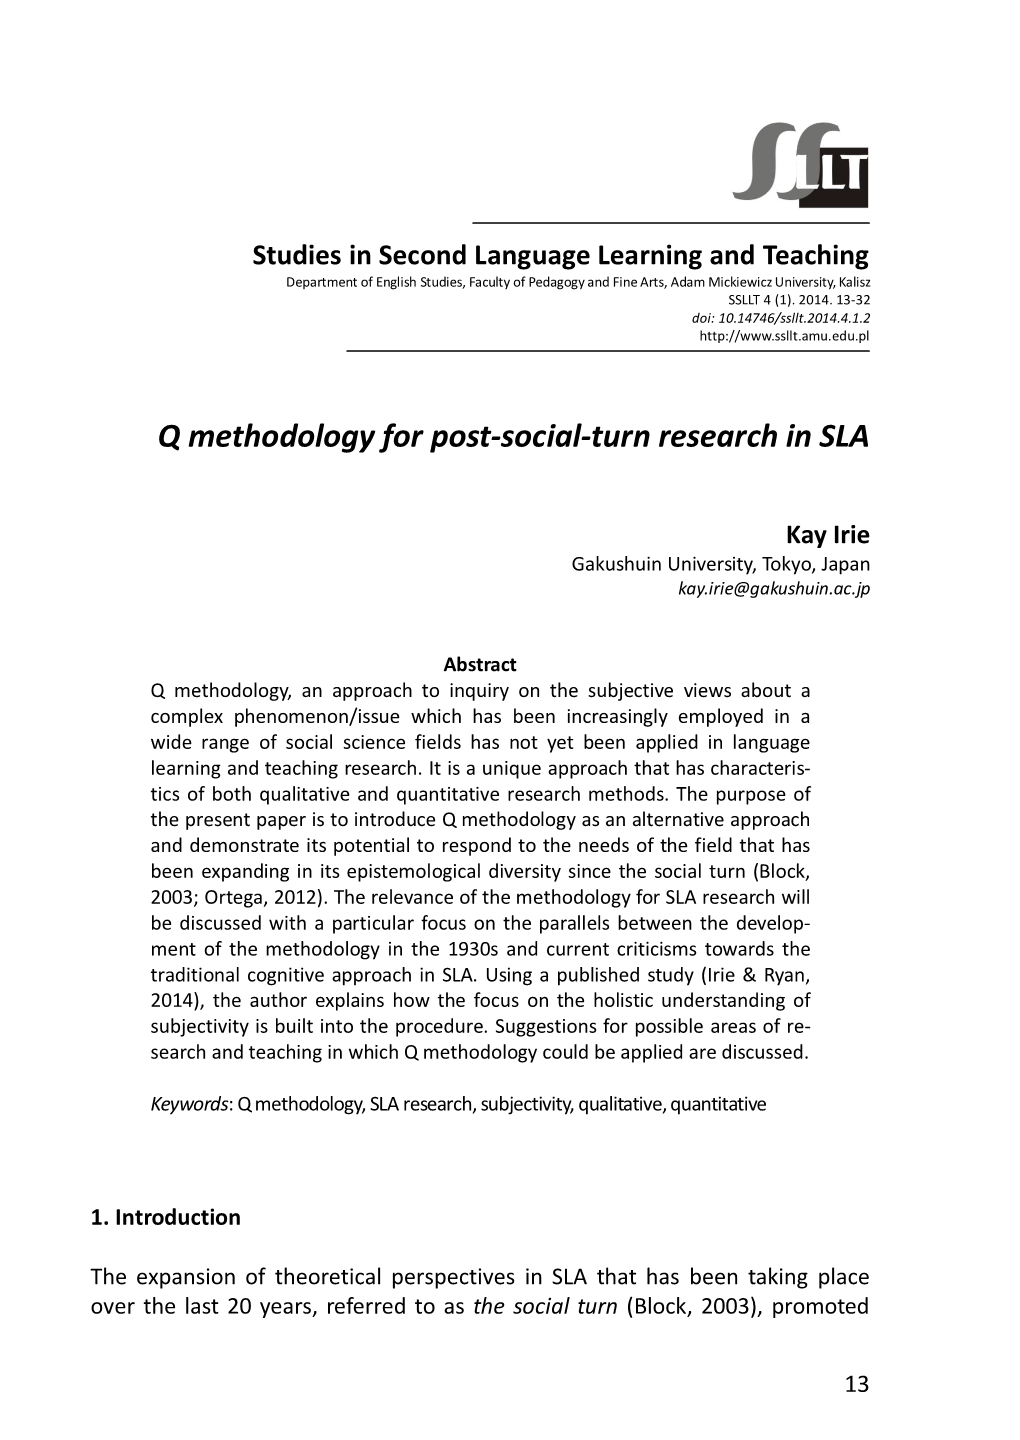 Q Methodology for Post-Social-Turn Research in SLA